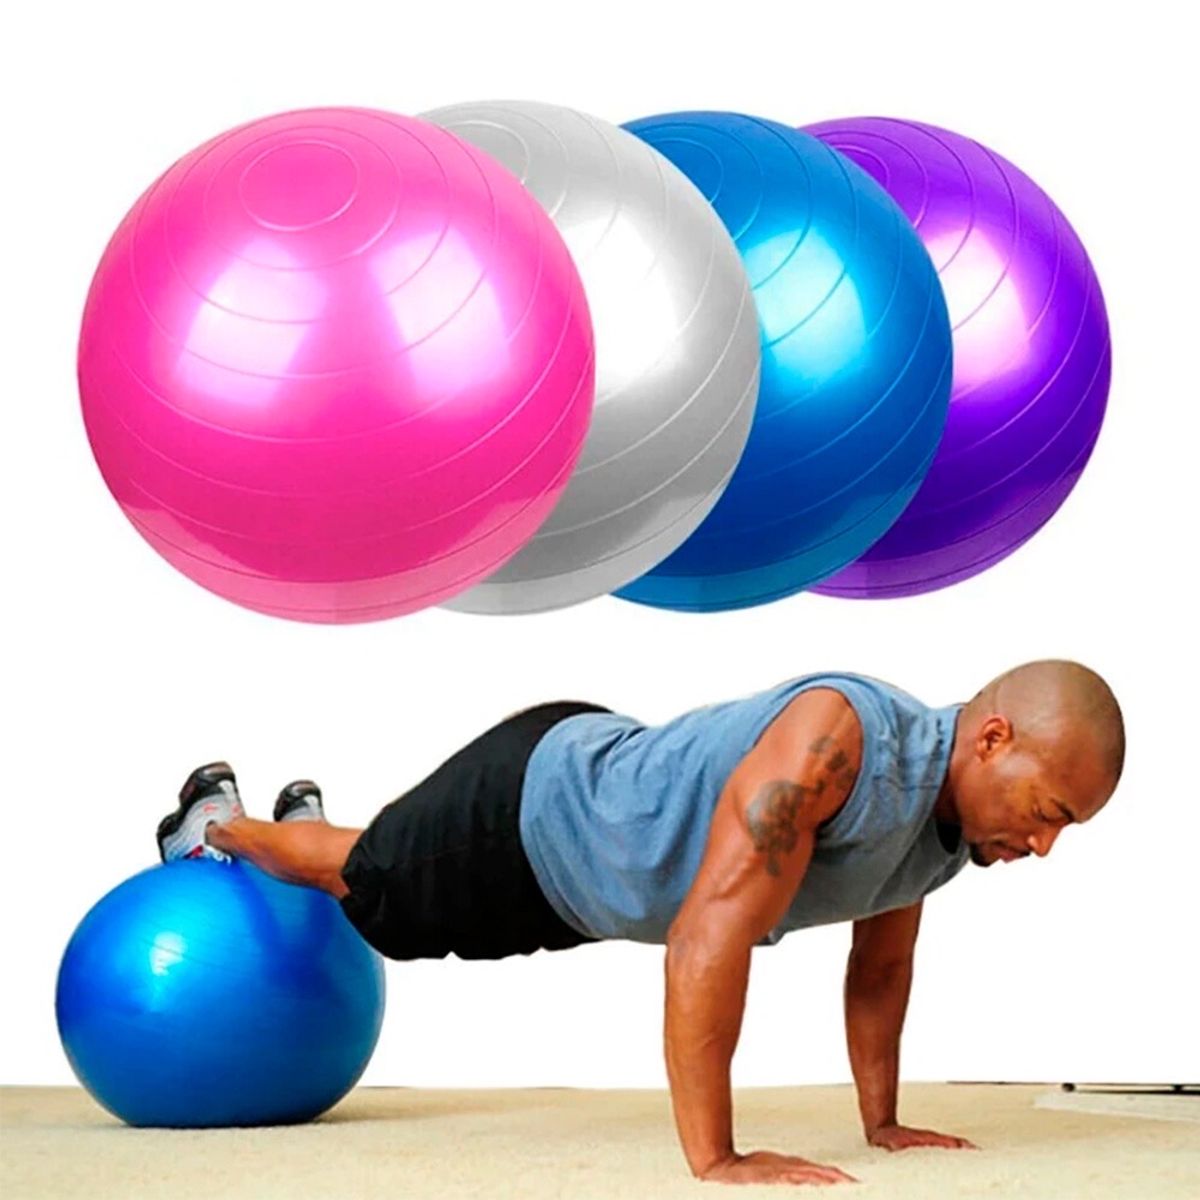 Bola Suiça Pilates Yoga Abdominal Fitness 65cm + Bomba Exercícios Força 816  - NEHC - Bola de Pilates - Magazine Luiza